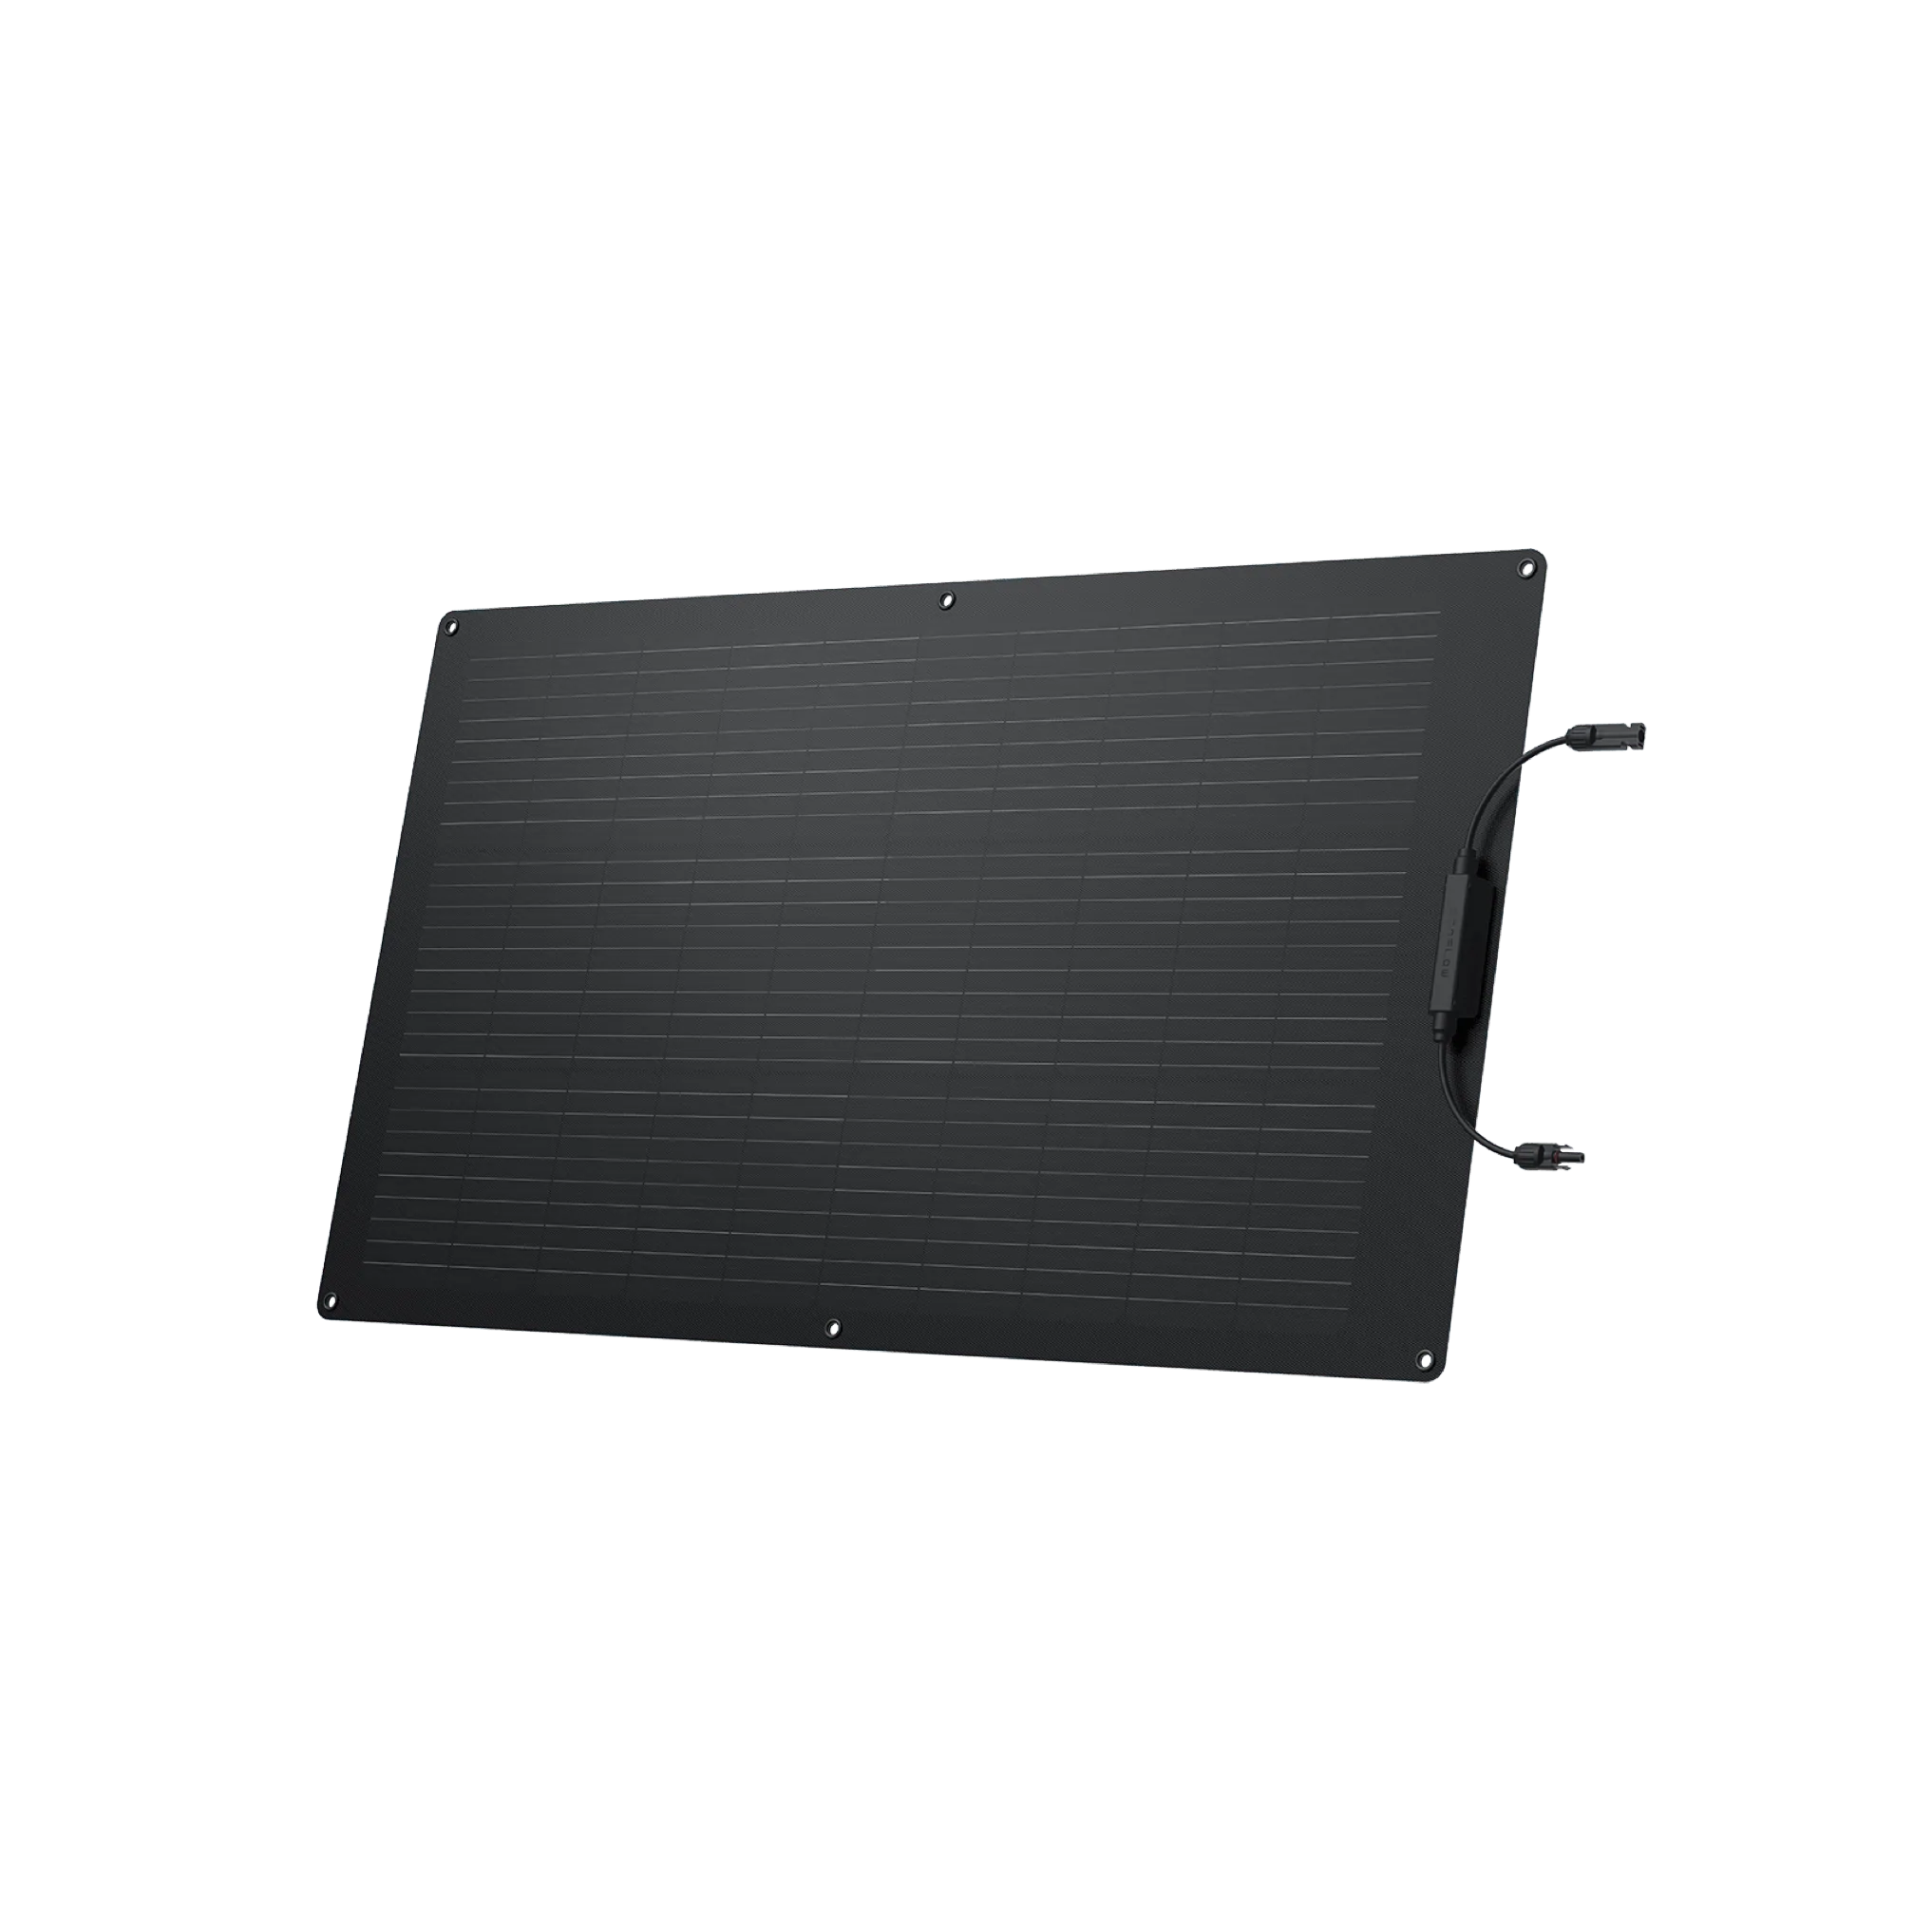 A flexible EcoFlow 100W monocrystalline solar panel on a white background.